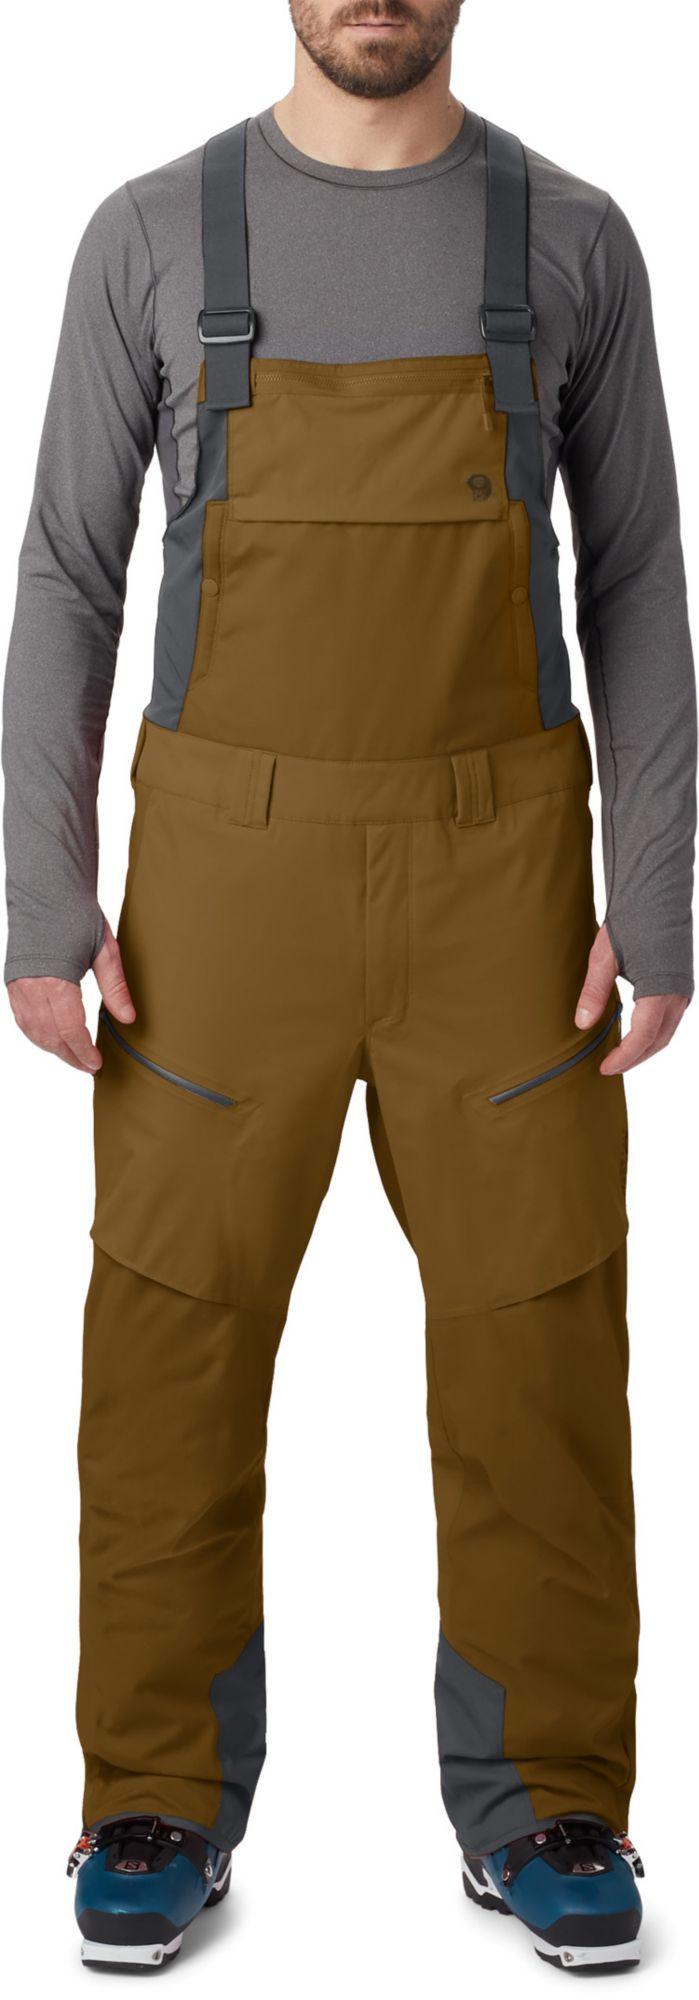 Mountain Hardwear Firefall Bib Pants in Golden Brown